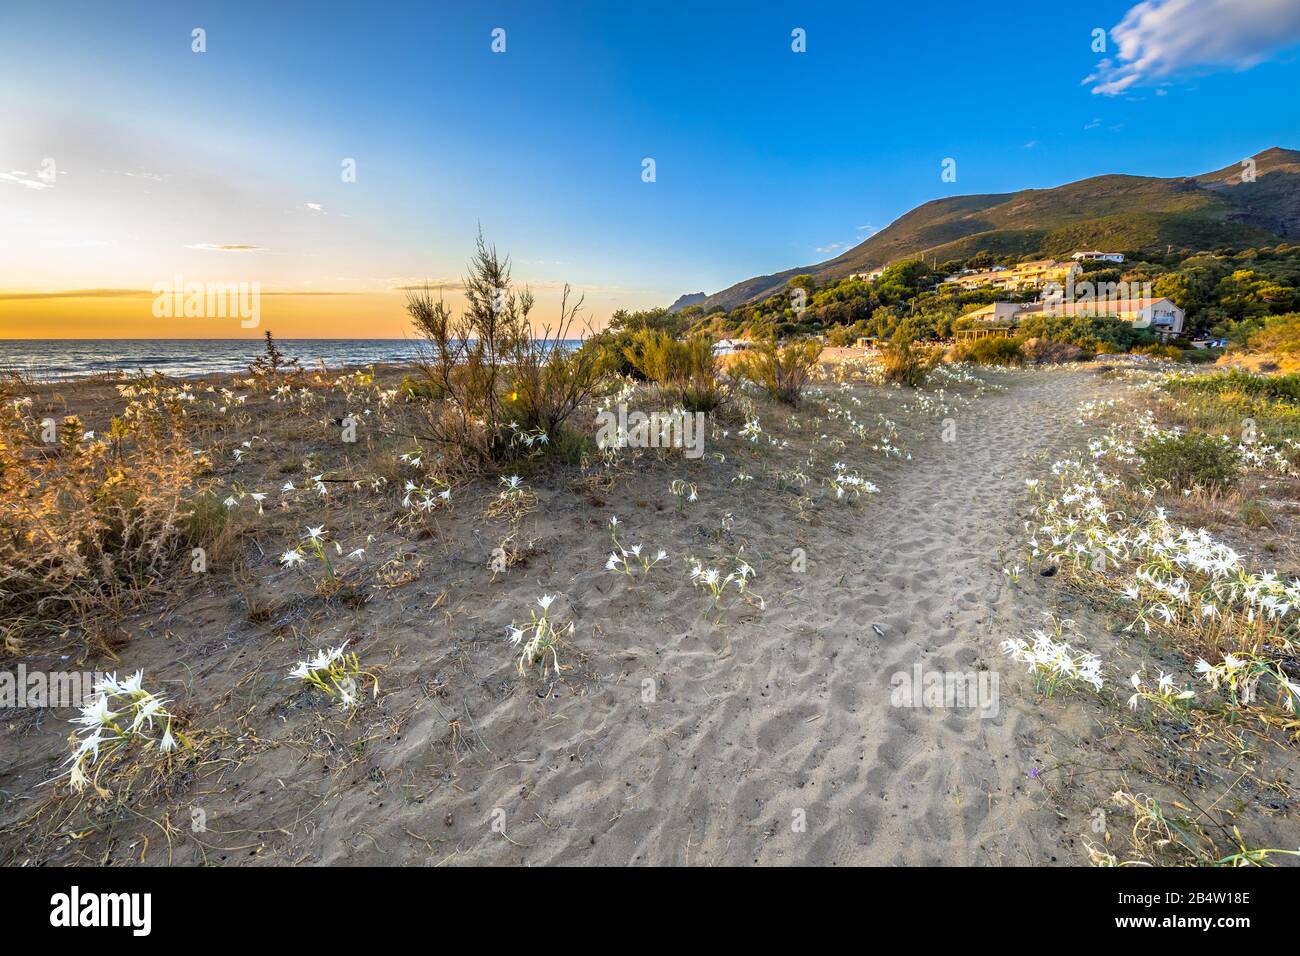 Illyrische Seerose (Pancratium illyricum) weiße Blumen, die in Dünen am korsischen Strand von Farinole auf Cap Corse, Korsika, Frankreich blühen Stockfoto